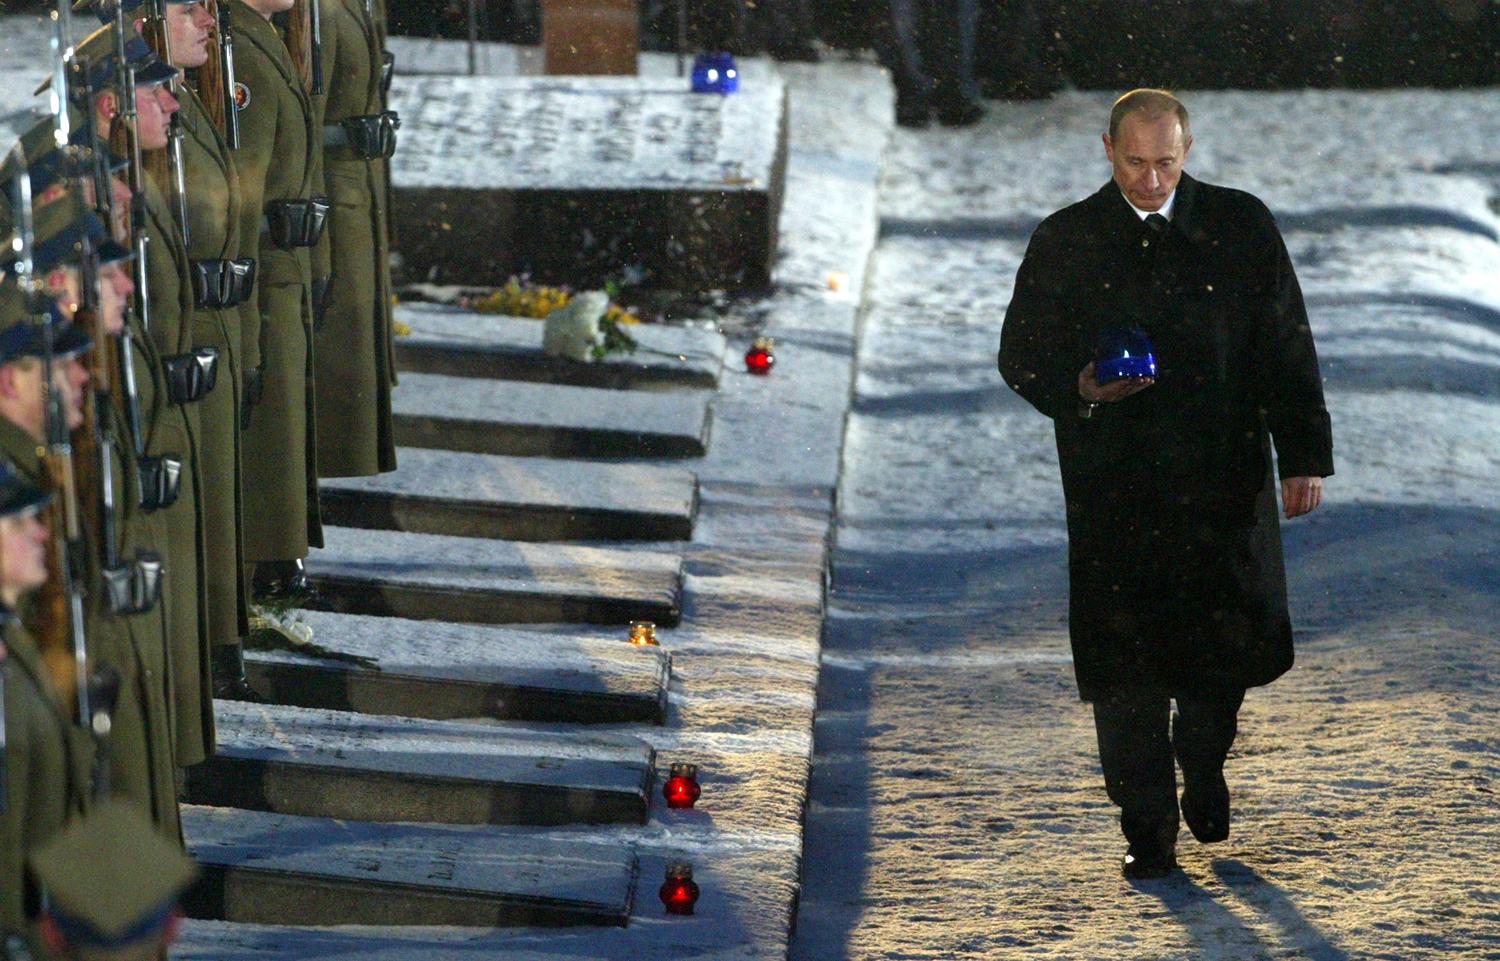 Tíz éve az orosz elnök még elment a megemlékezésre, most viszont az a fő esemény, hogy nem vesz részt az évfordulón